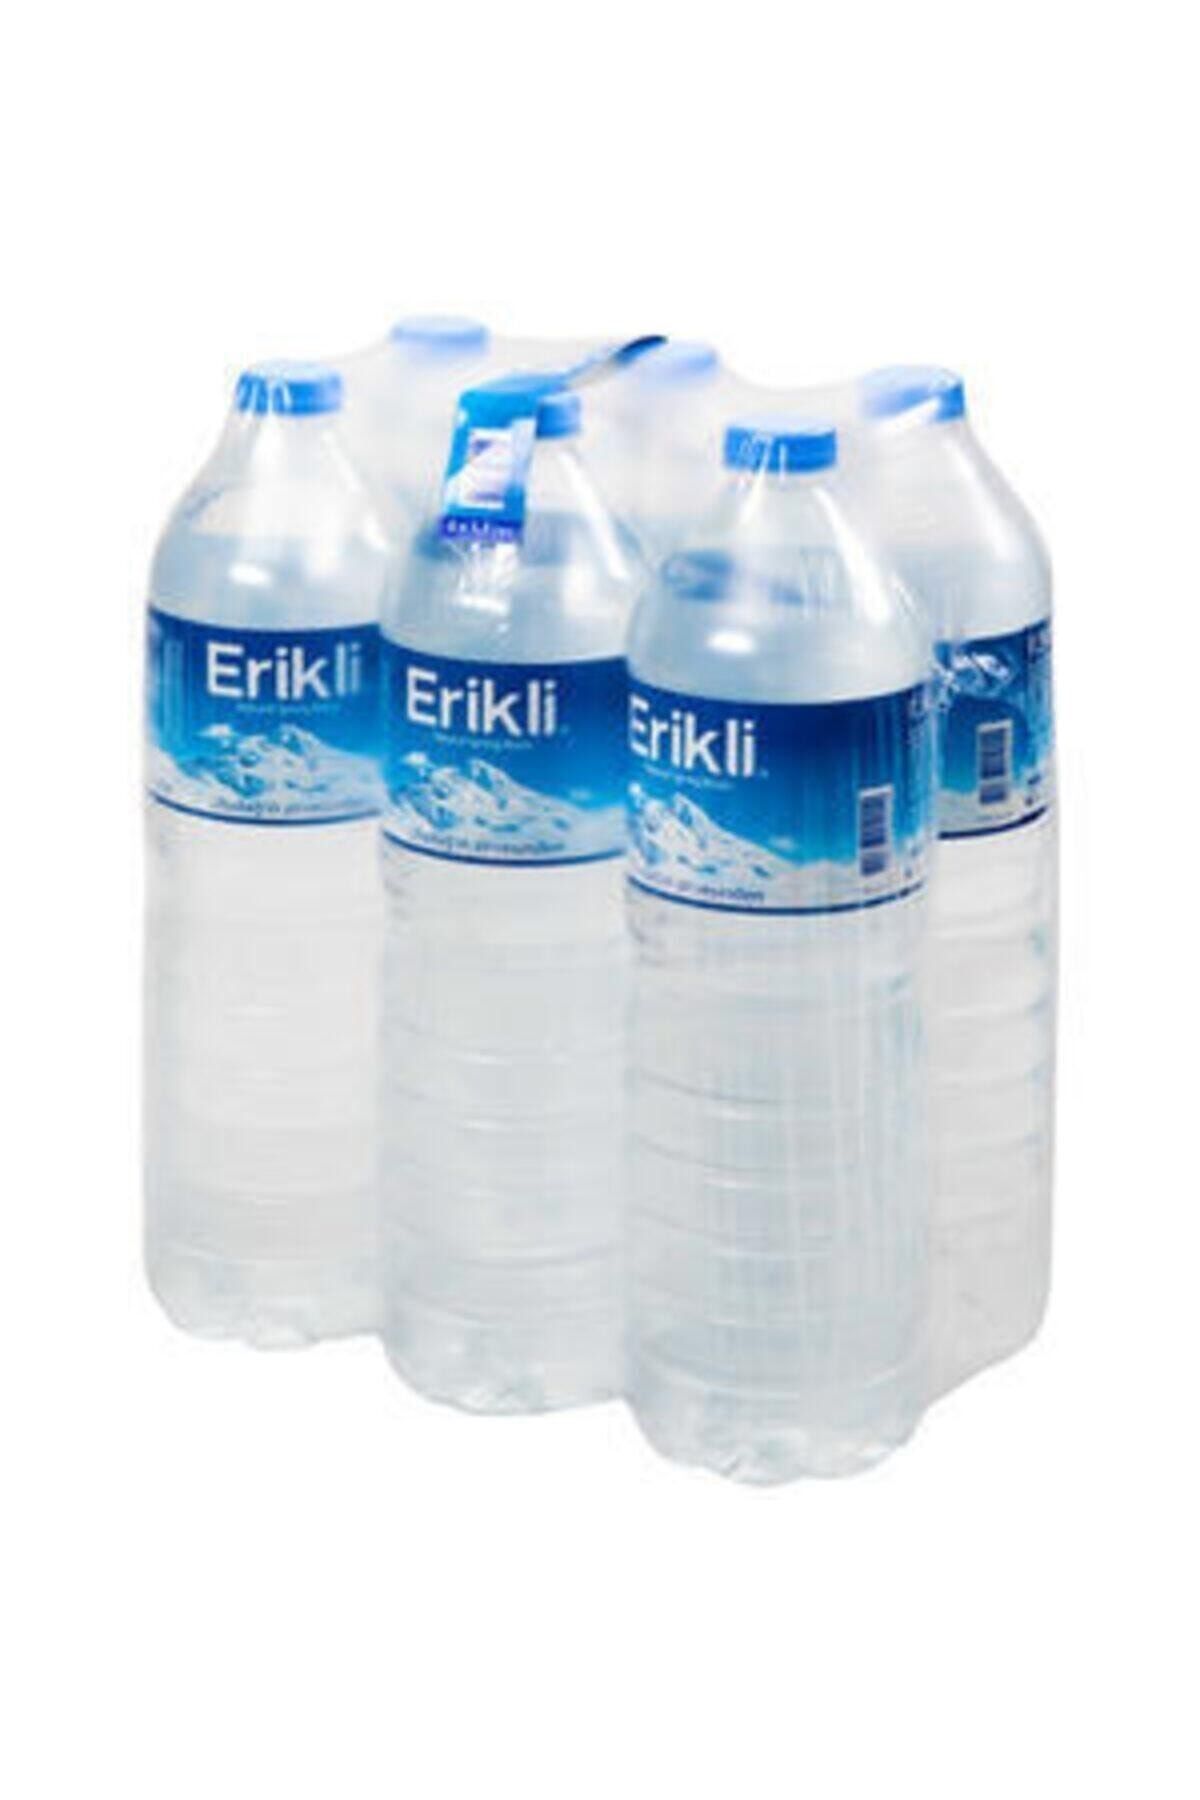 Erikli 6'lı Paket Su 1.5 lt